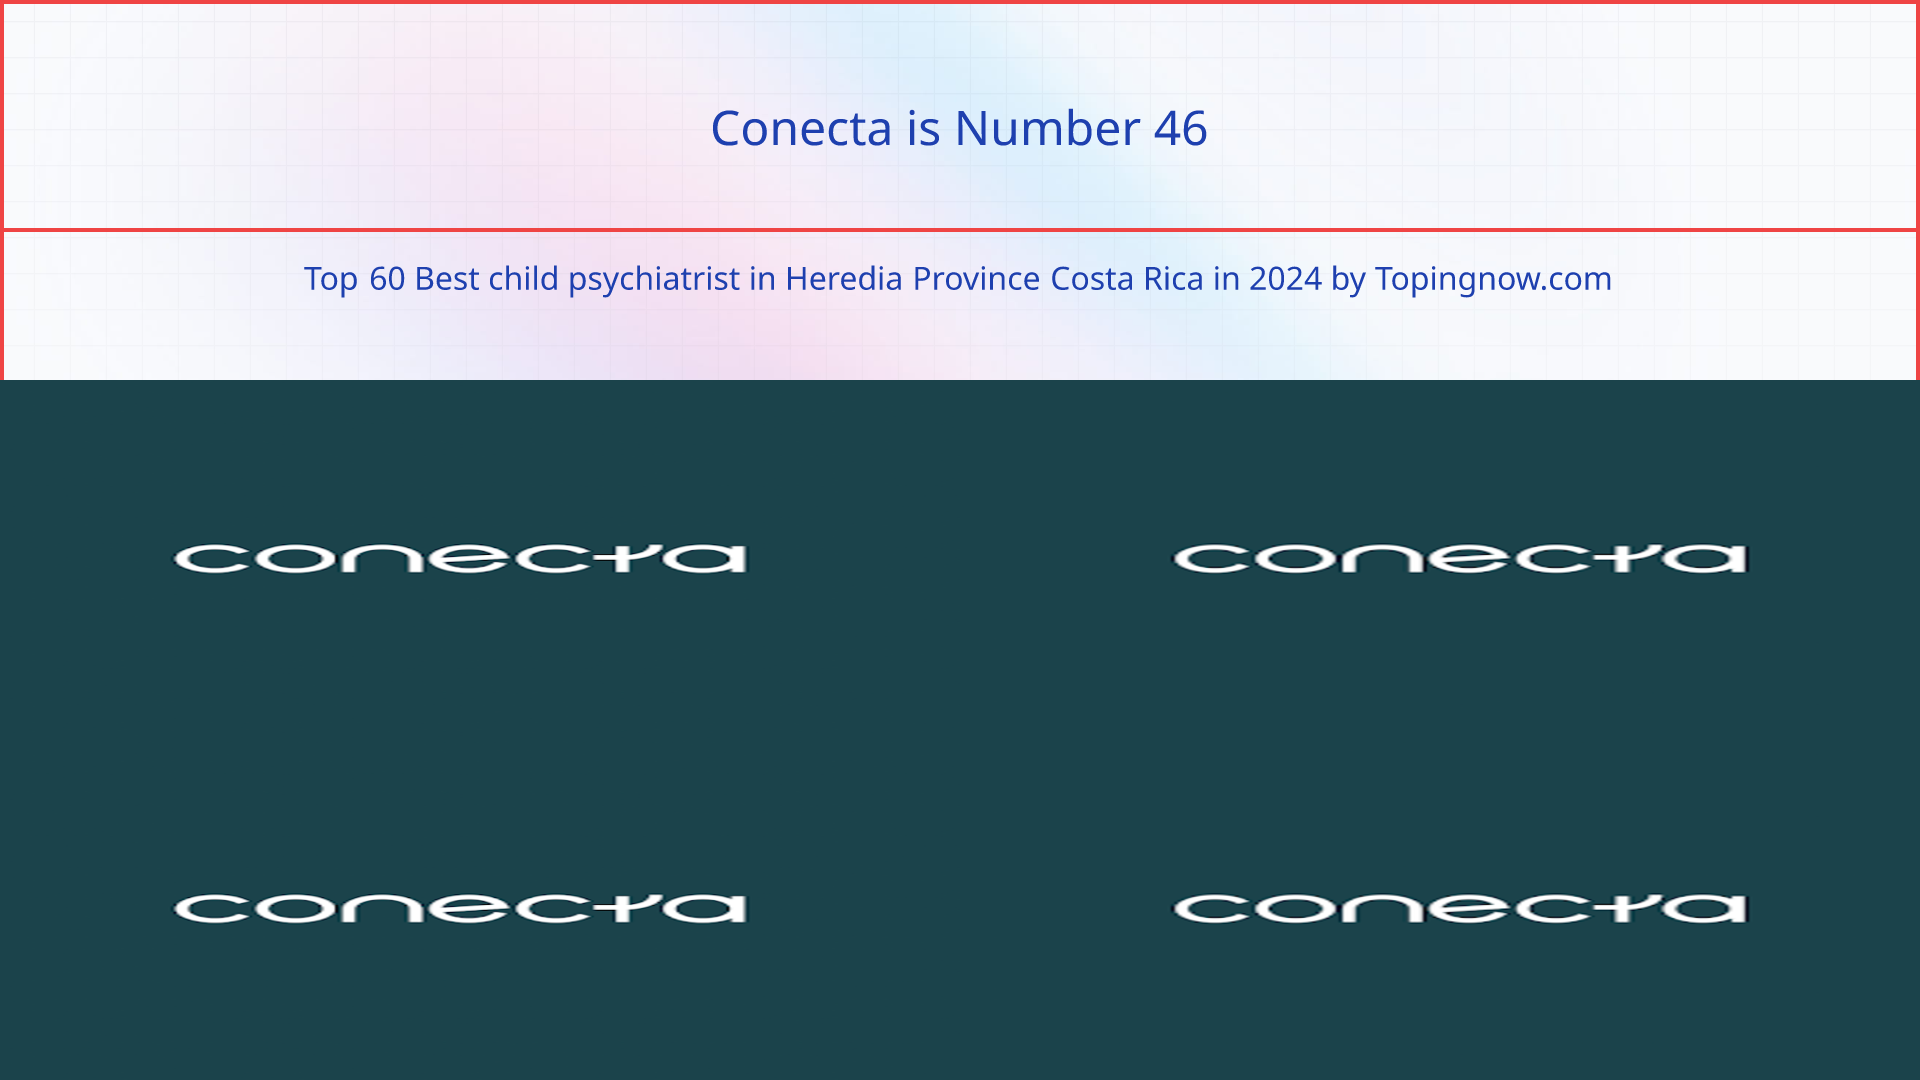 Conecta: Top 60 Best child psychiatrist in Heredia Province Costa Rica in 2024